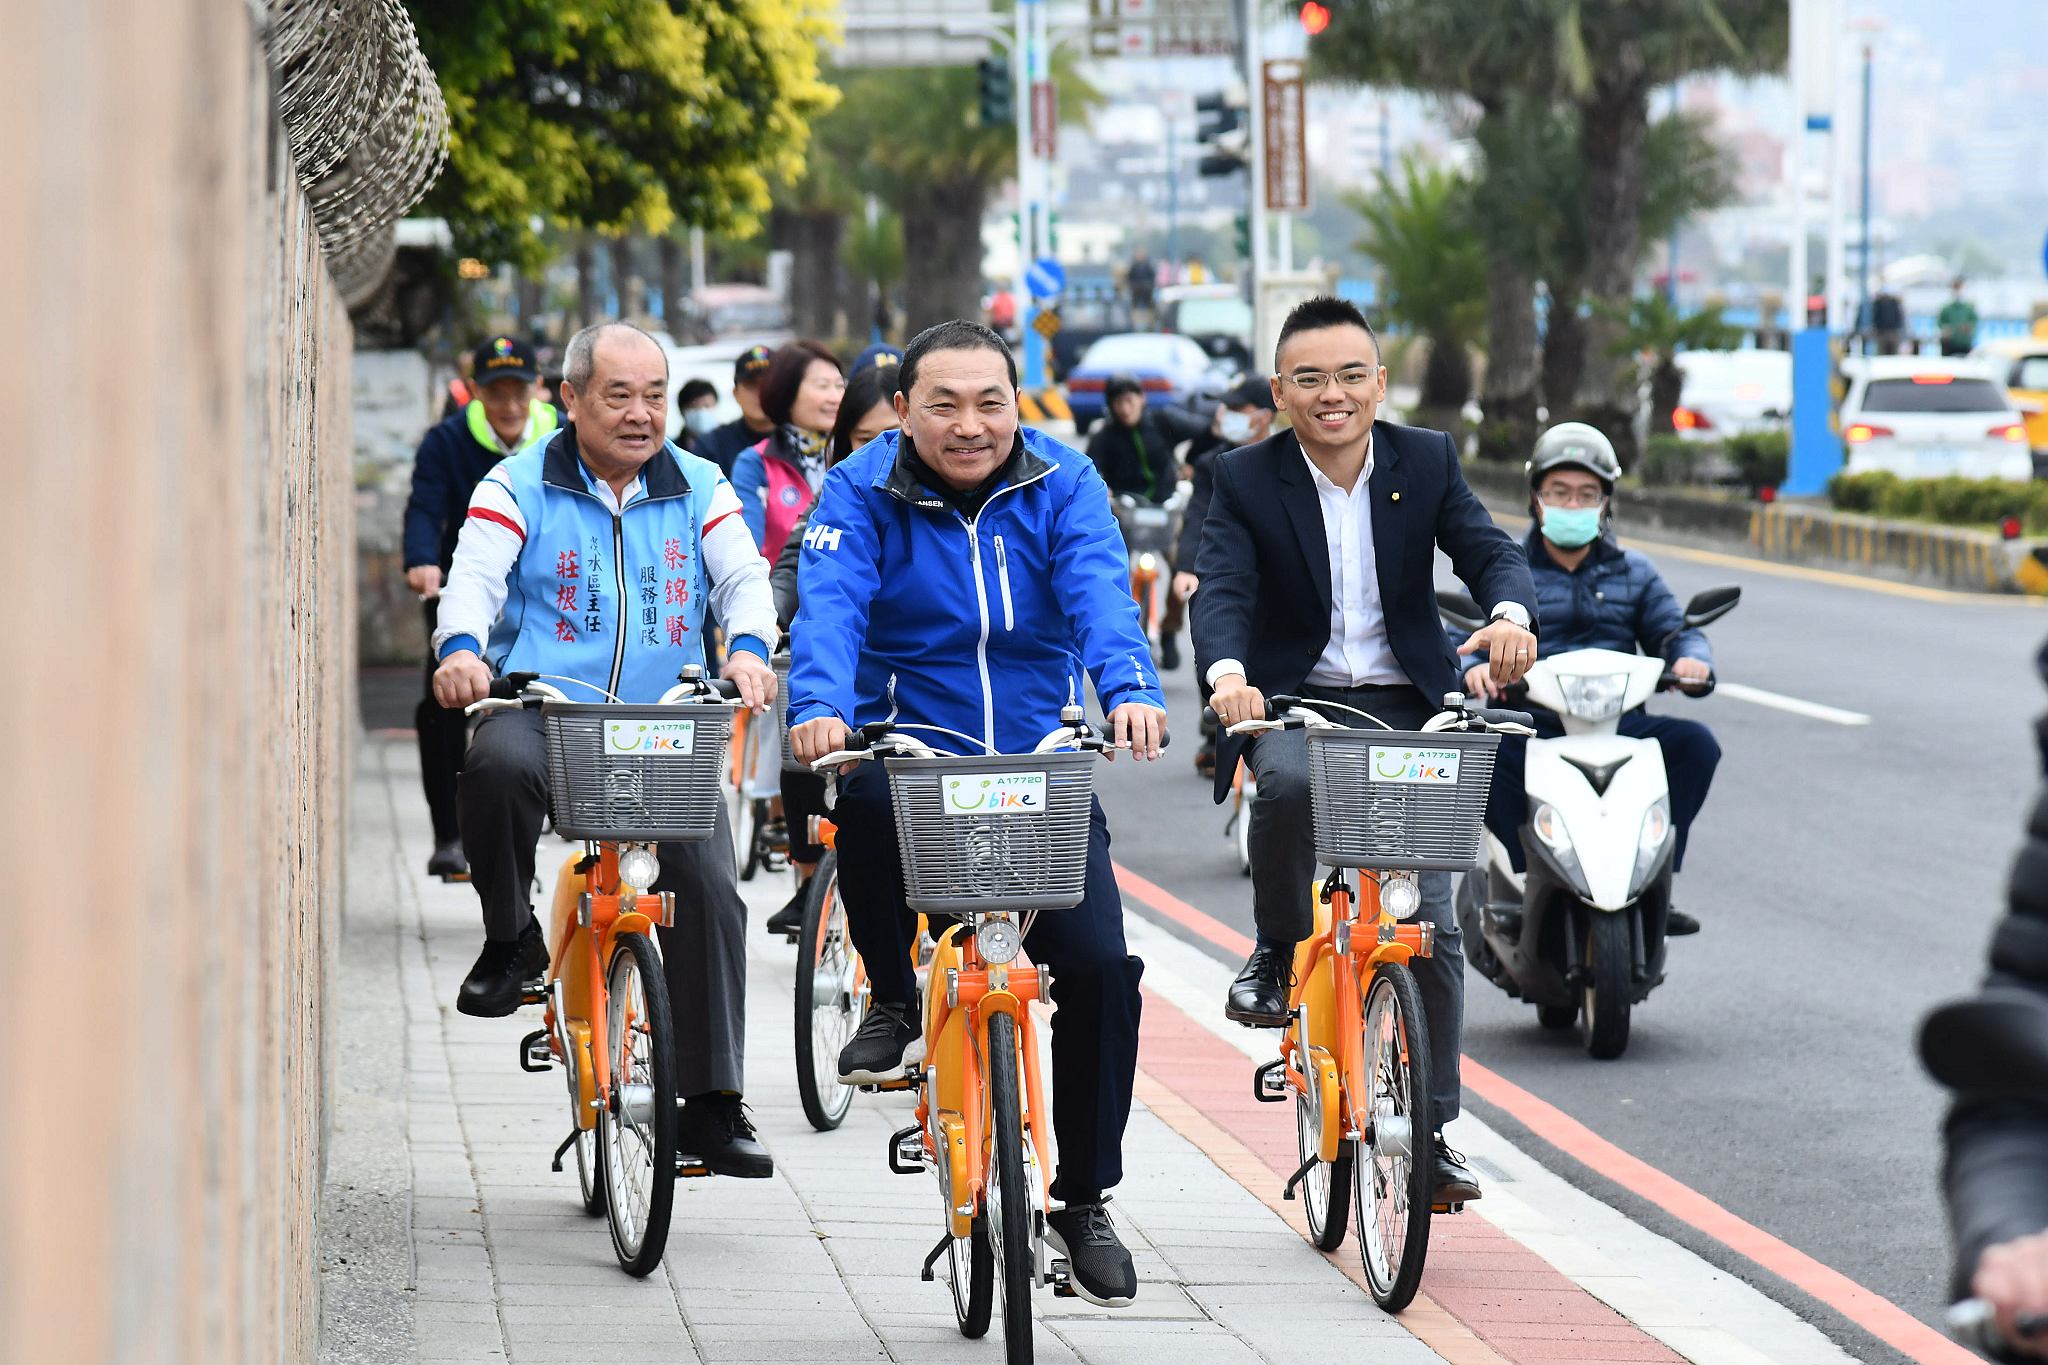 讓民眾通行及騎乘自行車更安全舒適